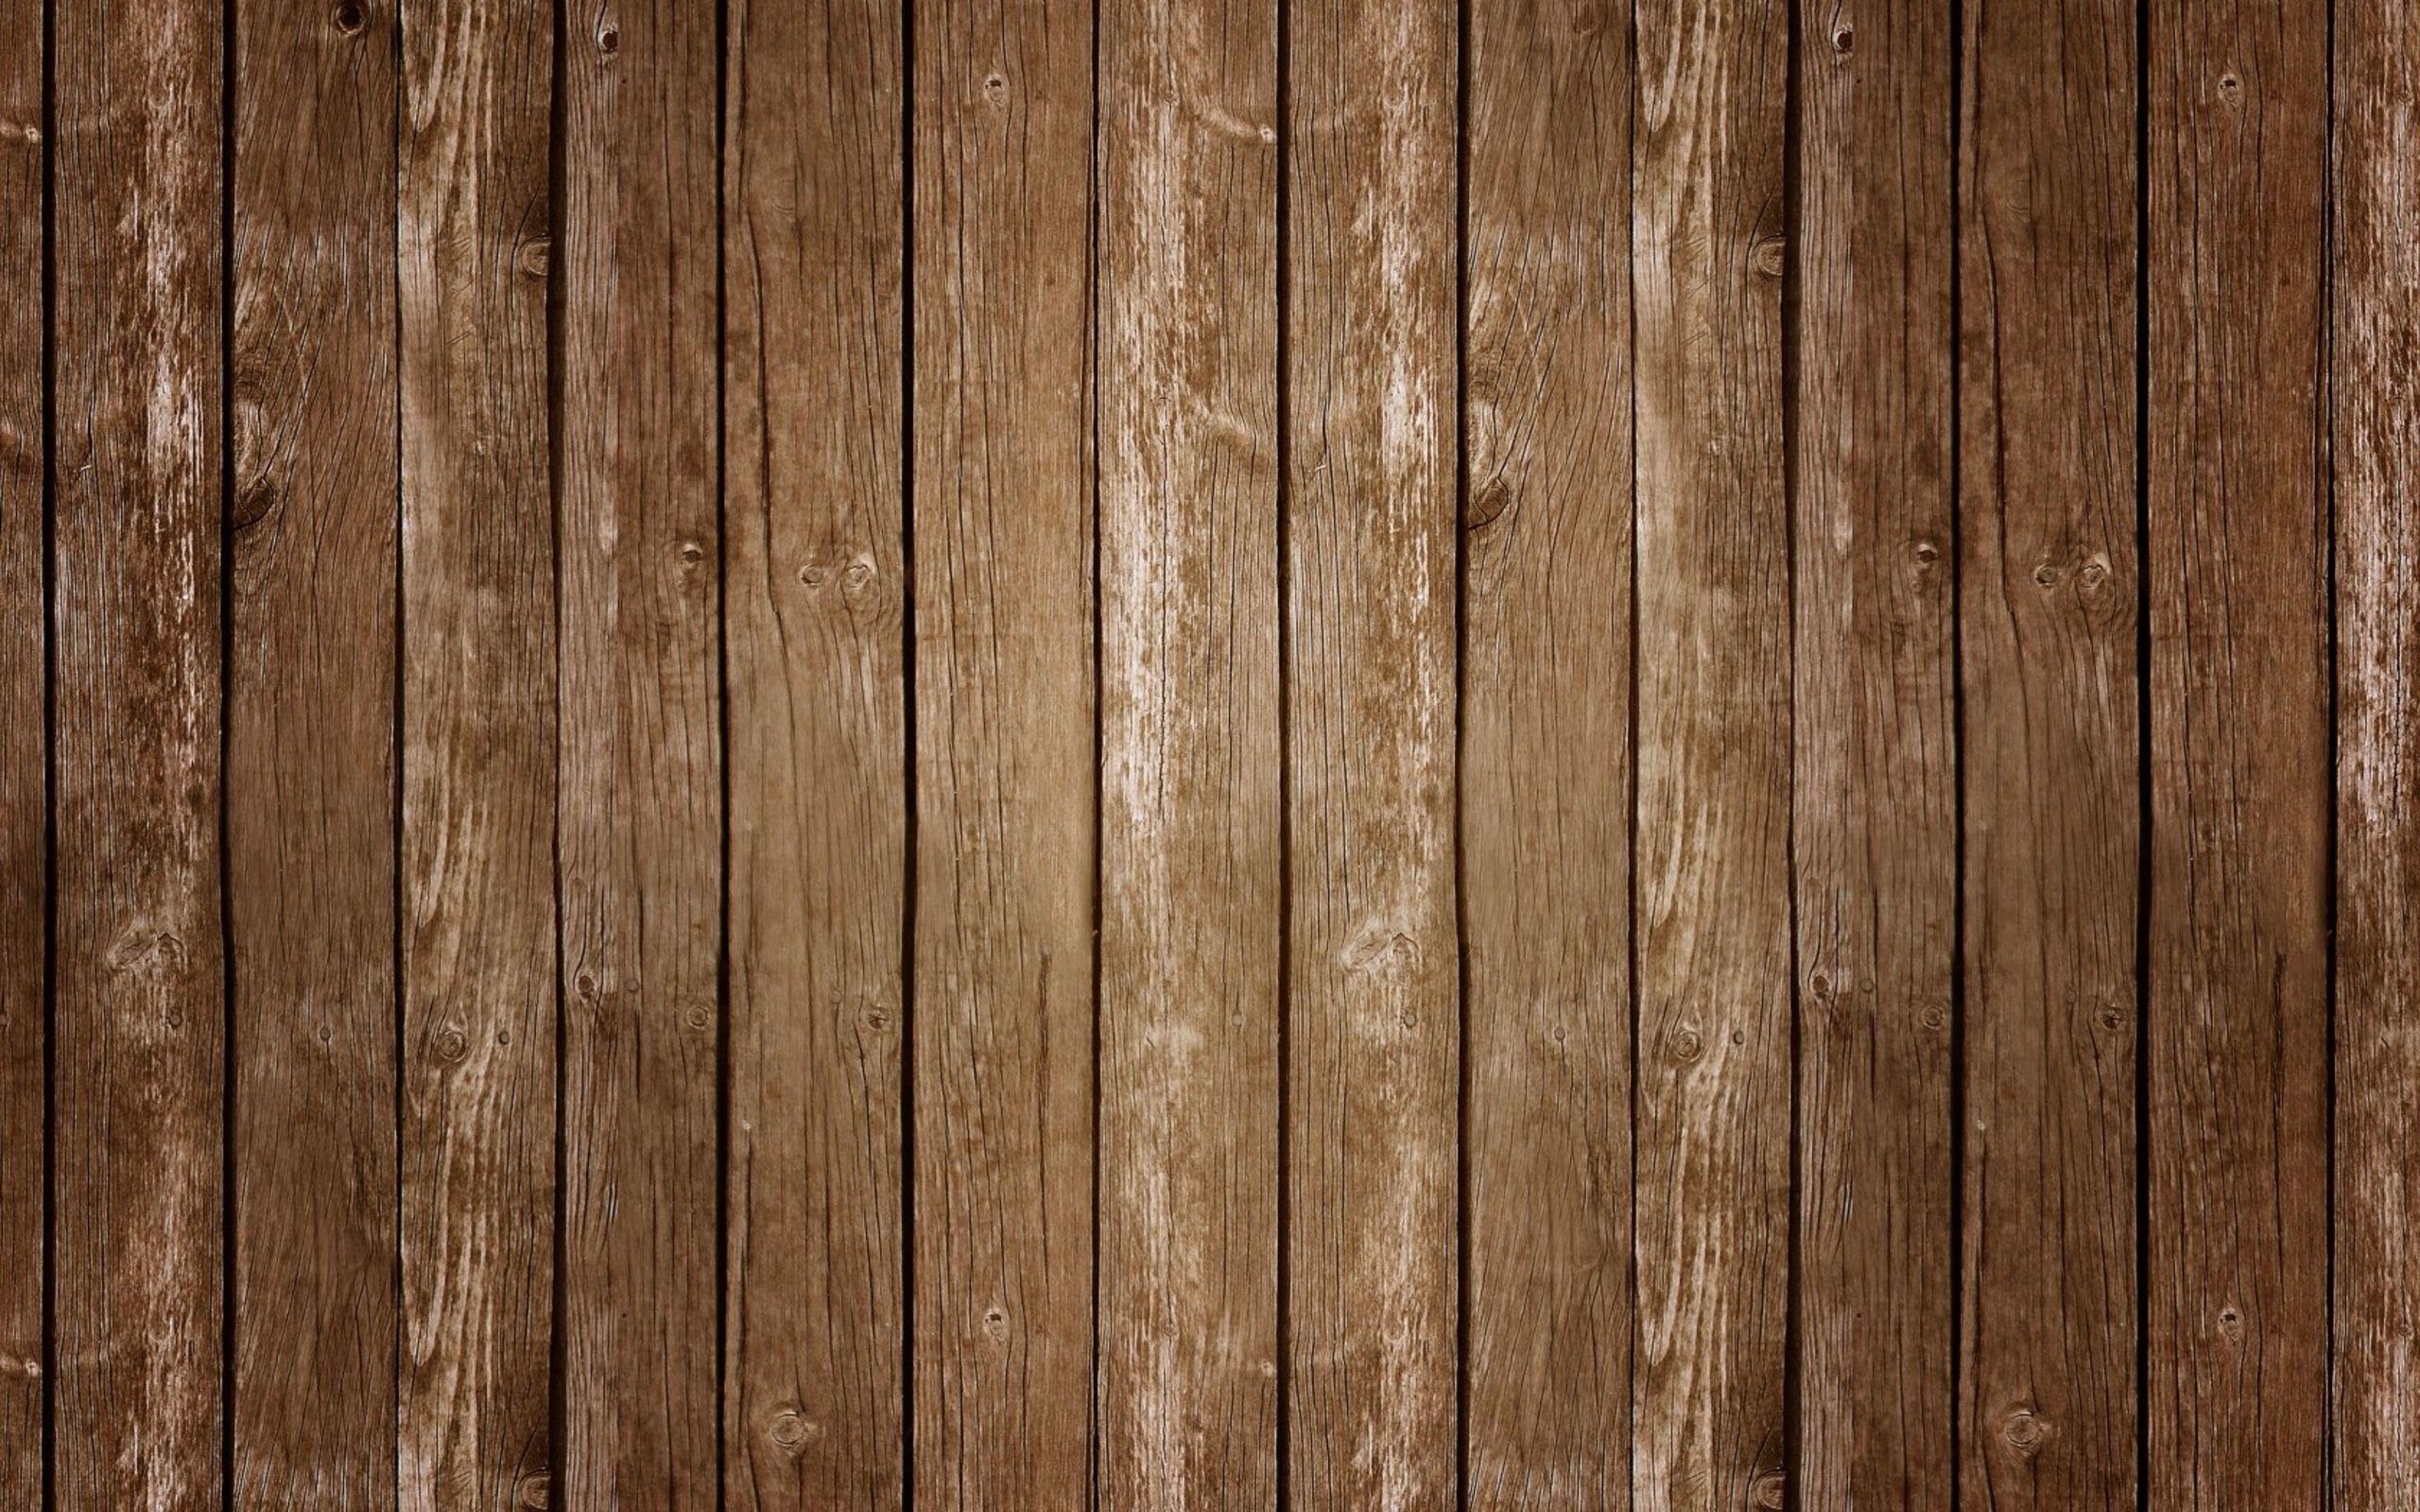 Hình nền gỗ: Bạn đang tìm kiếm một hình nền gỗ đẹp cho máy tính của mình? Hãy tham khảo hình ảnh này và khám phá thế giới đầy màu sắc của các loại gỗ khác nhau. Chắc chắn bạn sẽ tìm được một hình nền gỗ ưng ý để tạo nên một không gian làm việc hoàn hảo.